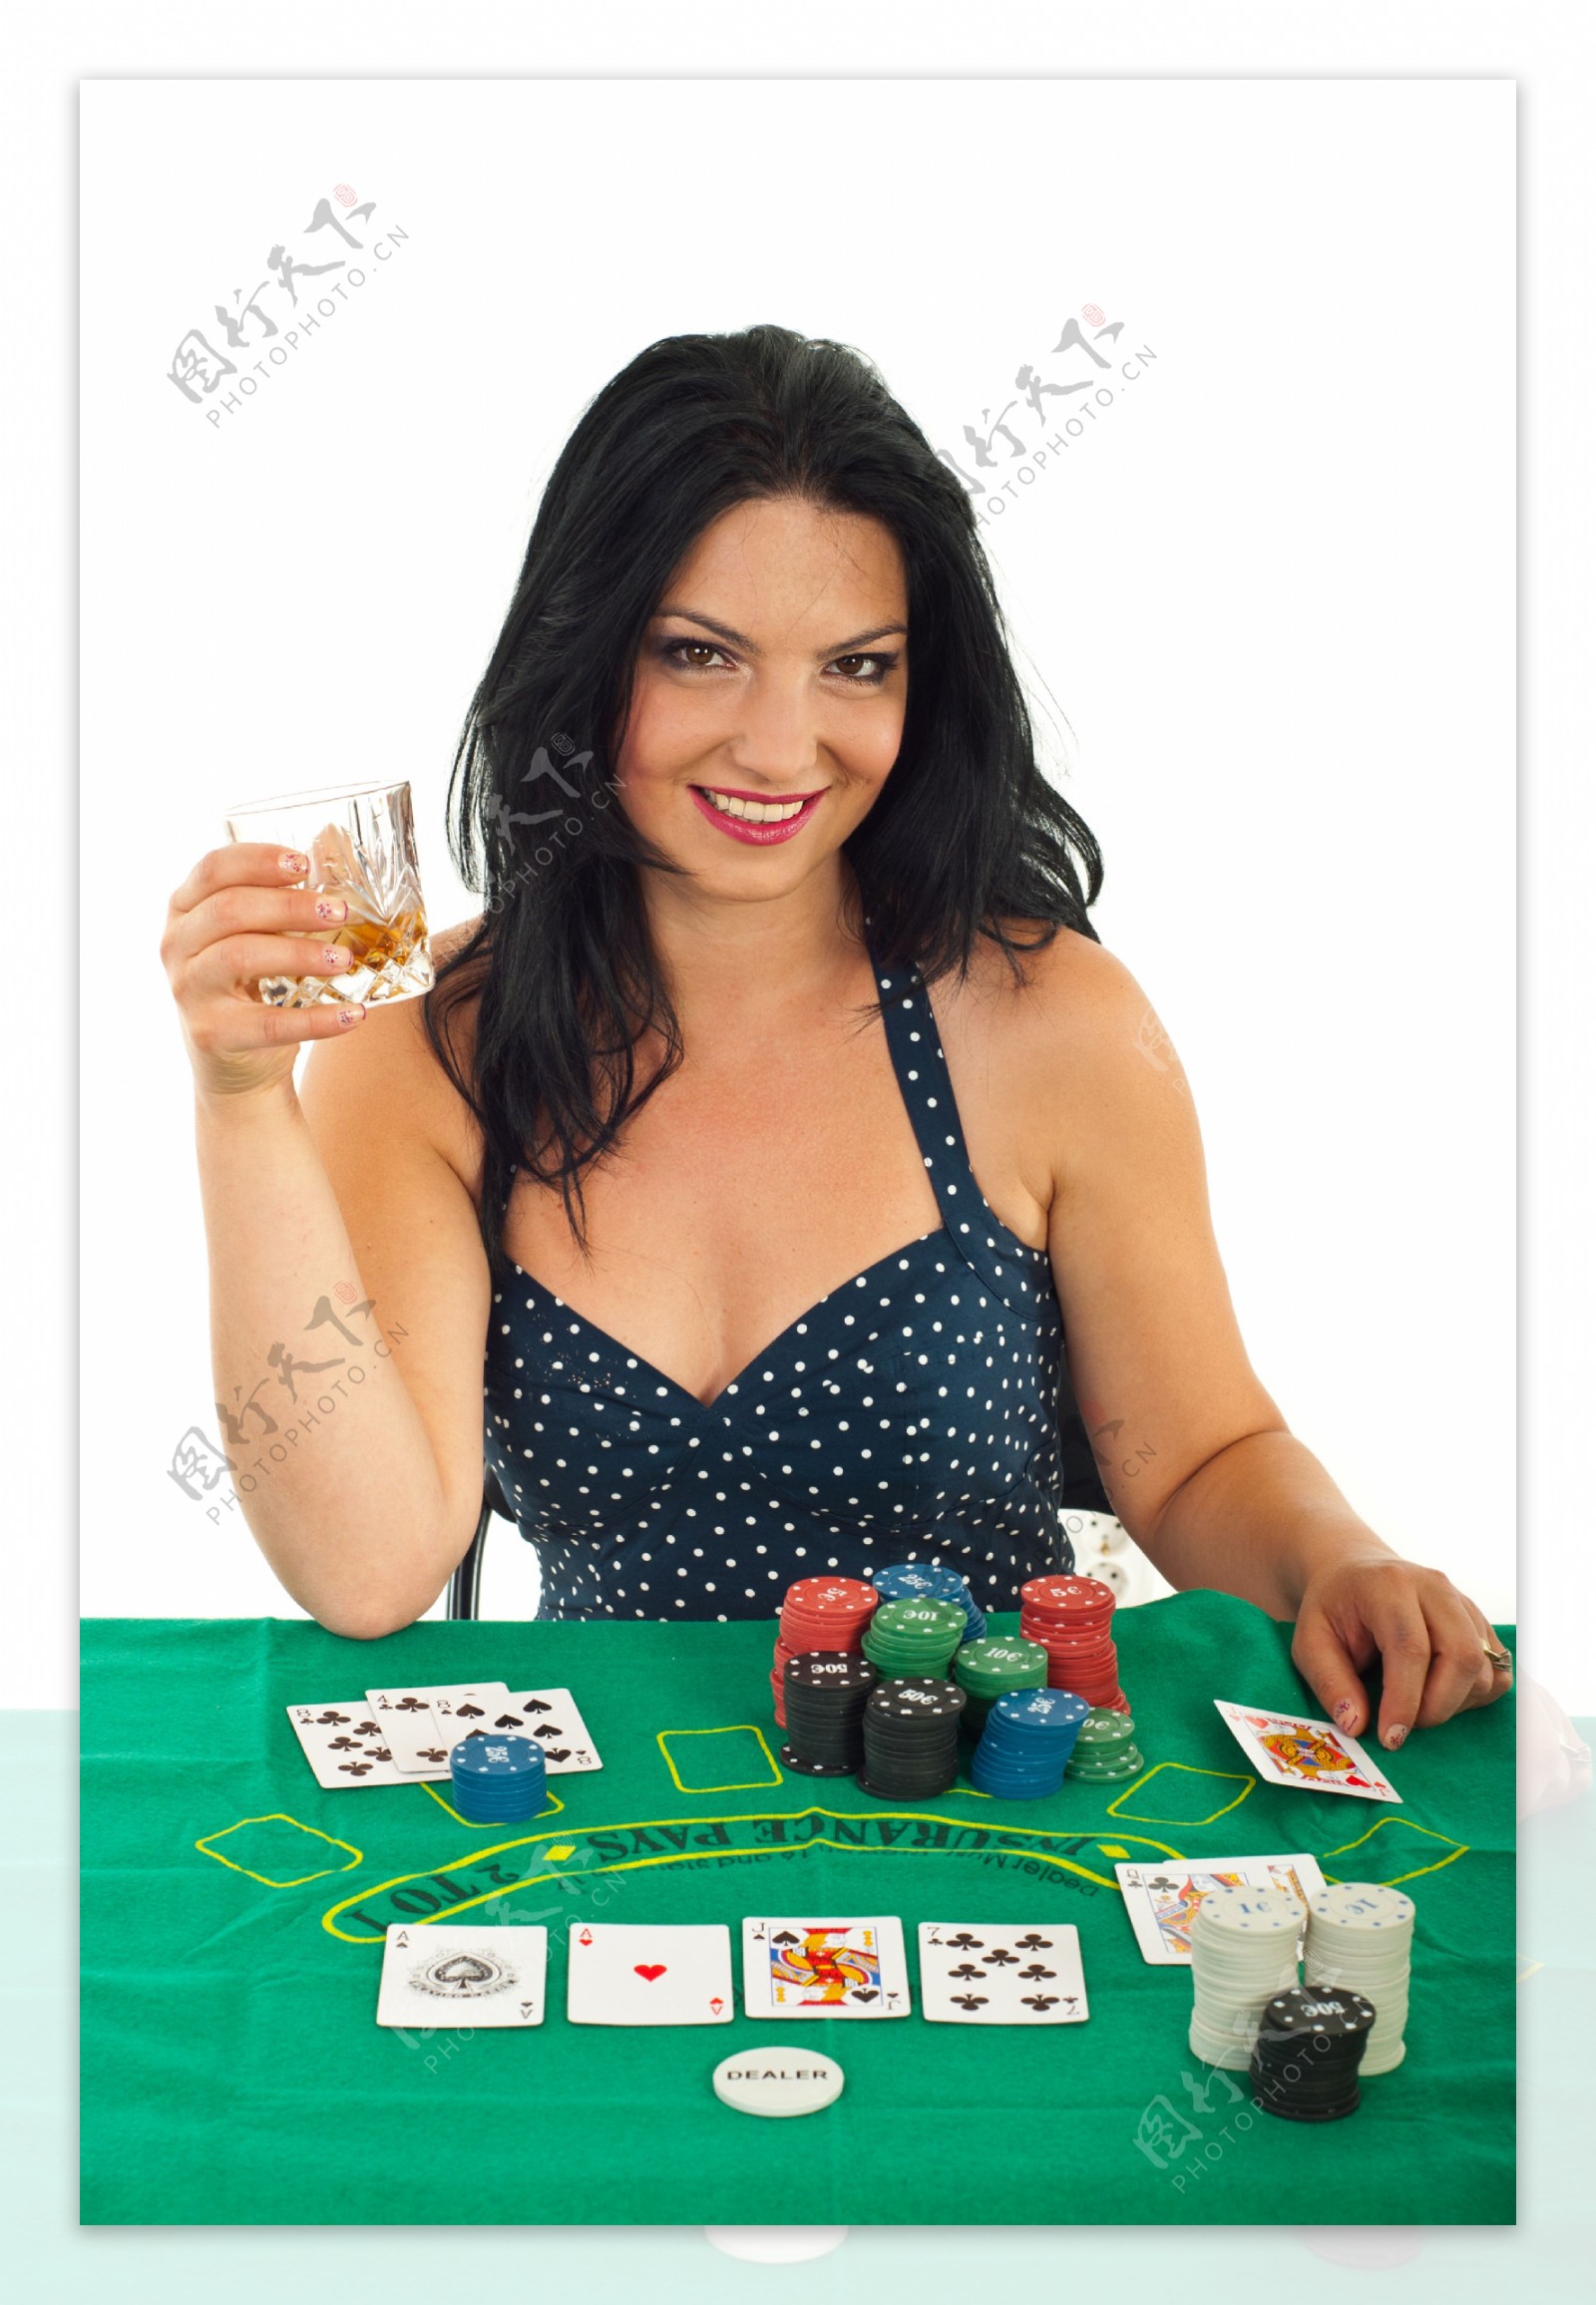 赌钱的性感美女图片